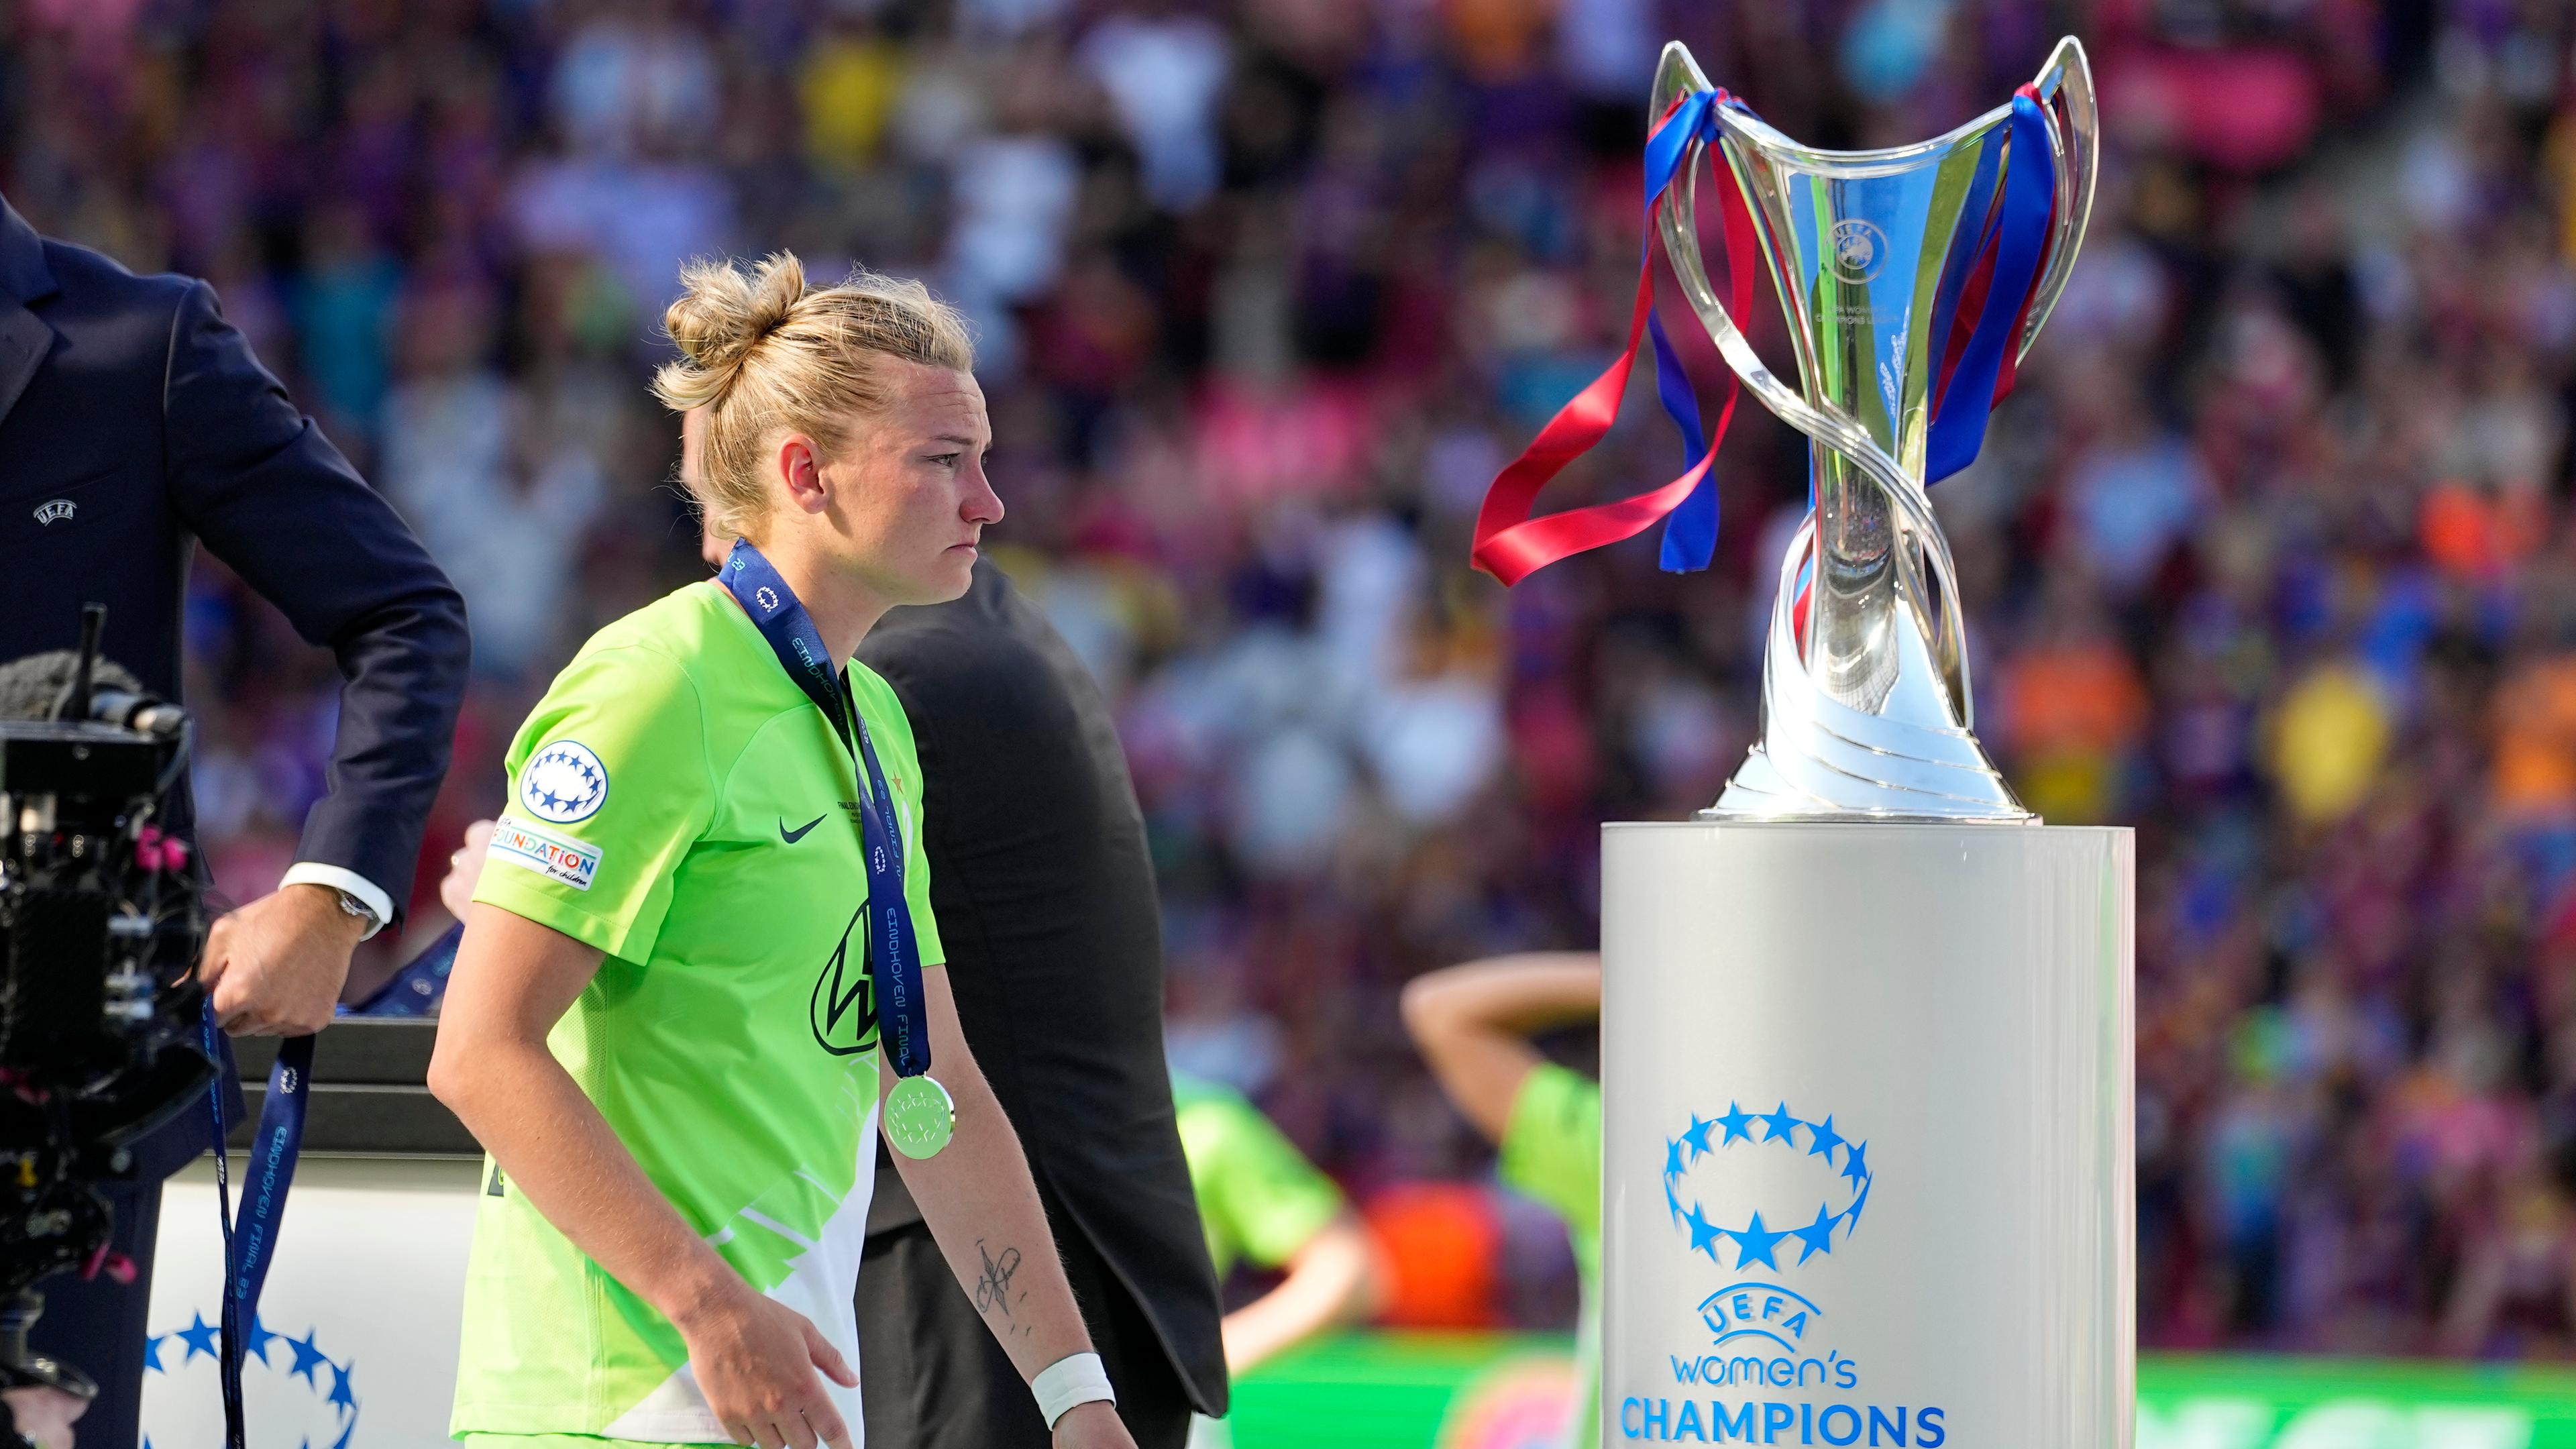 Nach 20-Führung VfL-Frauen verlieren Finale gegen Barca